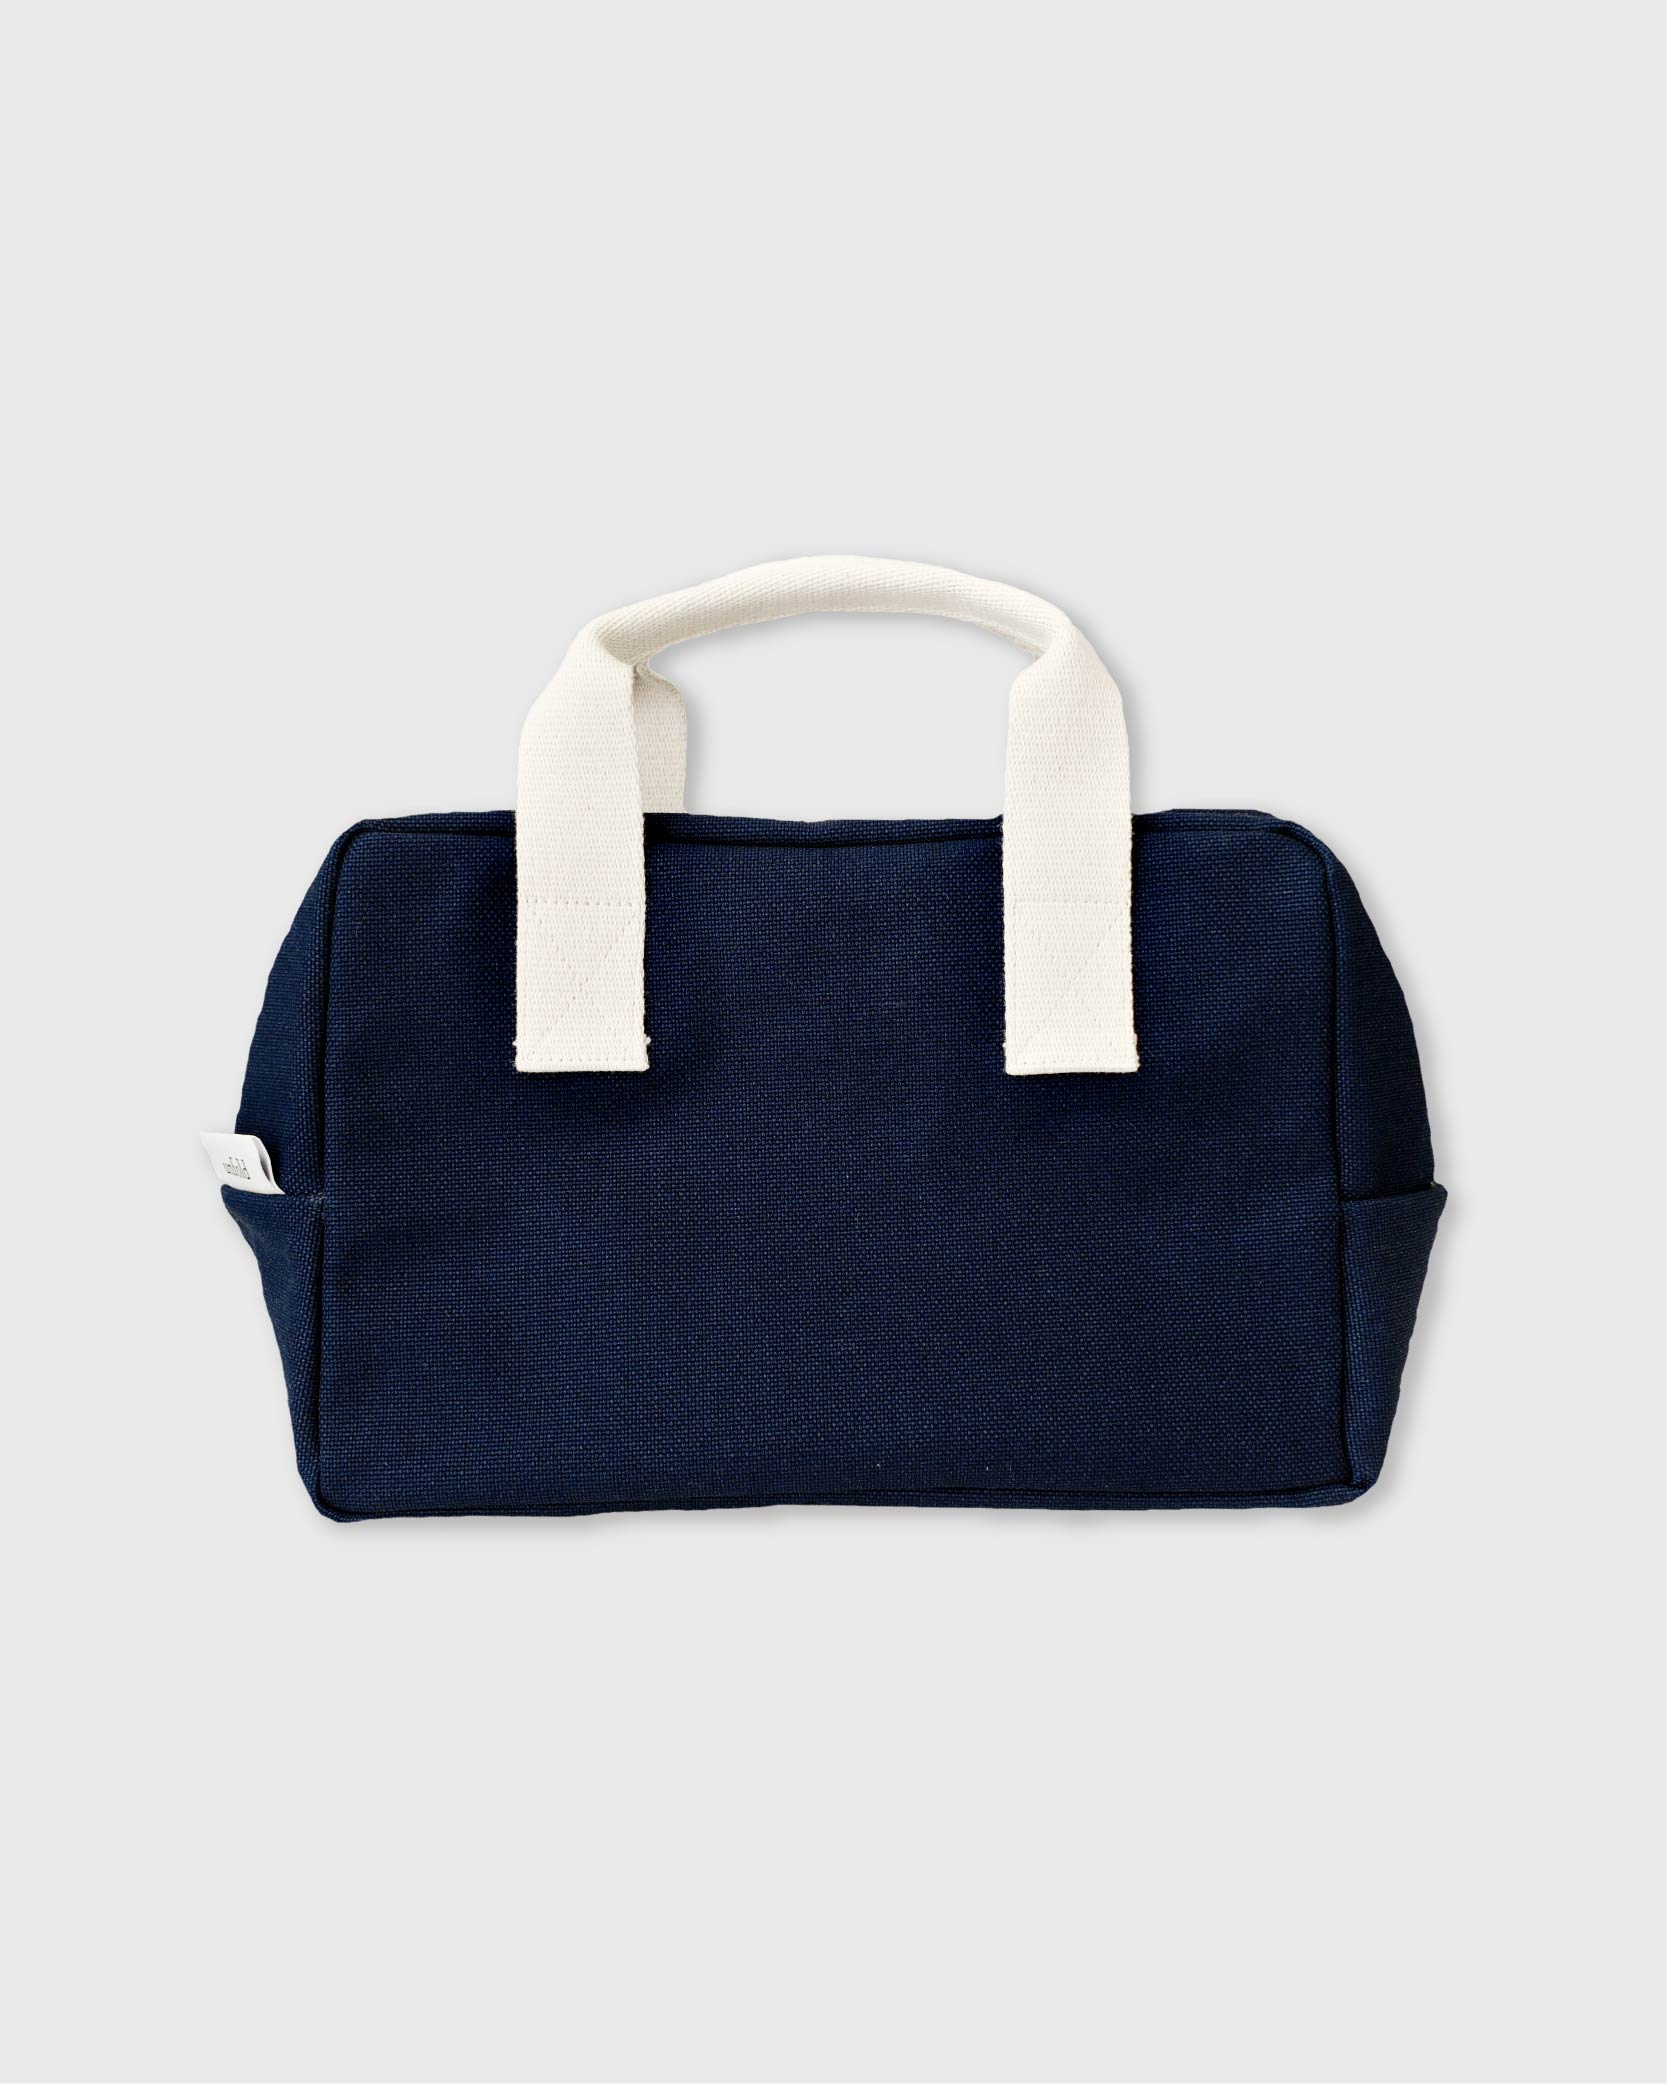 언폴드,unfold,에코백,파우치,천가방,친환경가방,[L - 4/5 예약배송] Boston bag (navy)